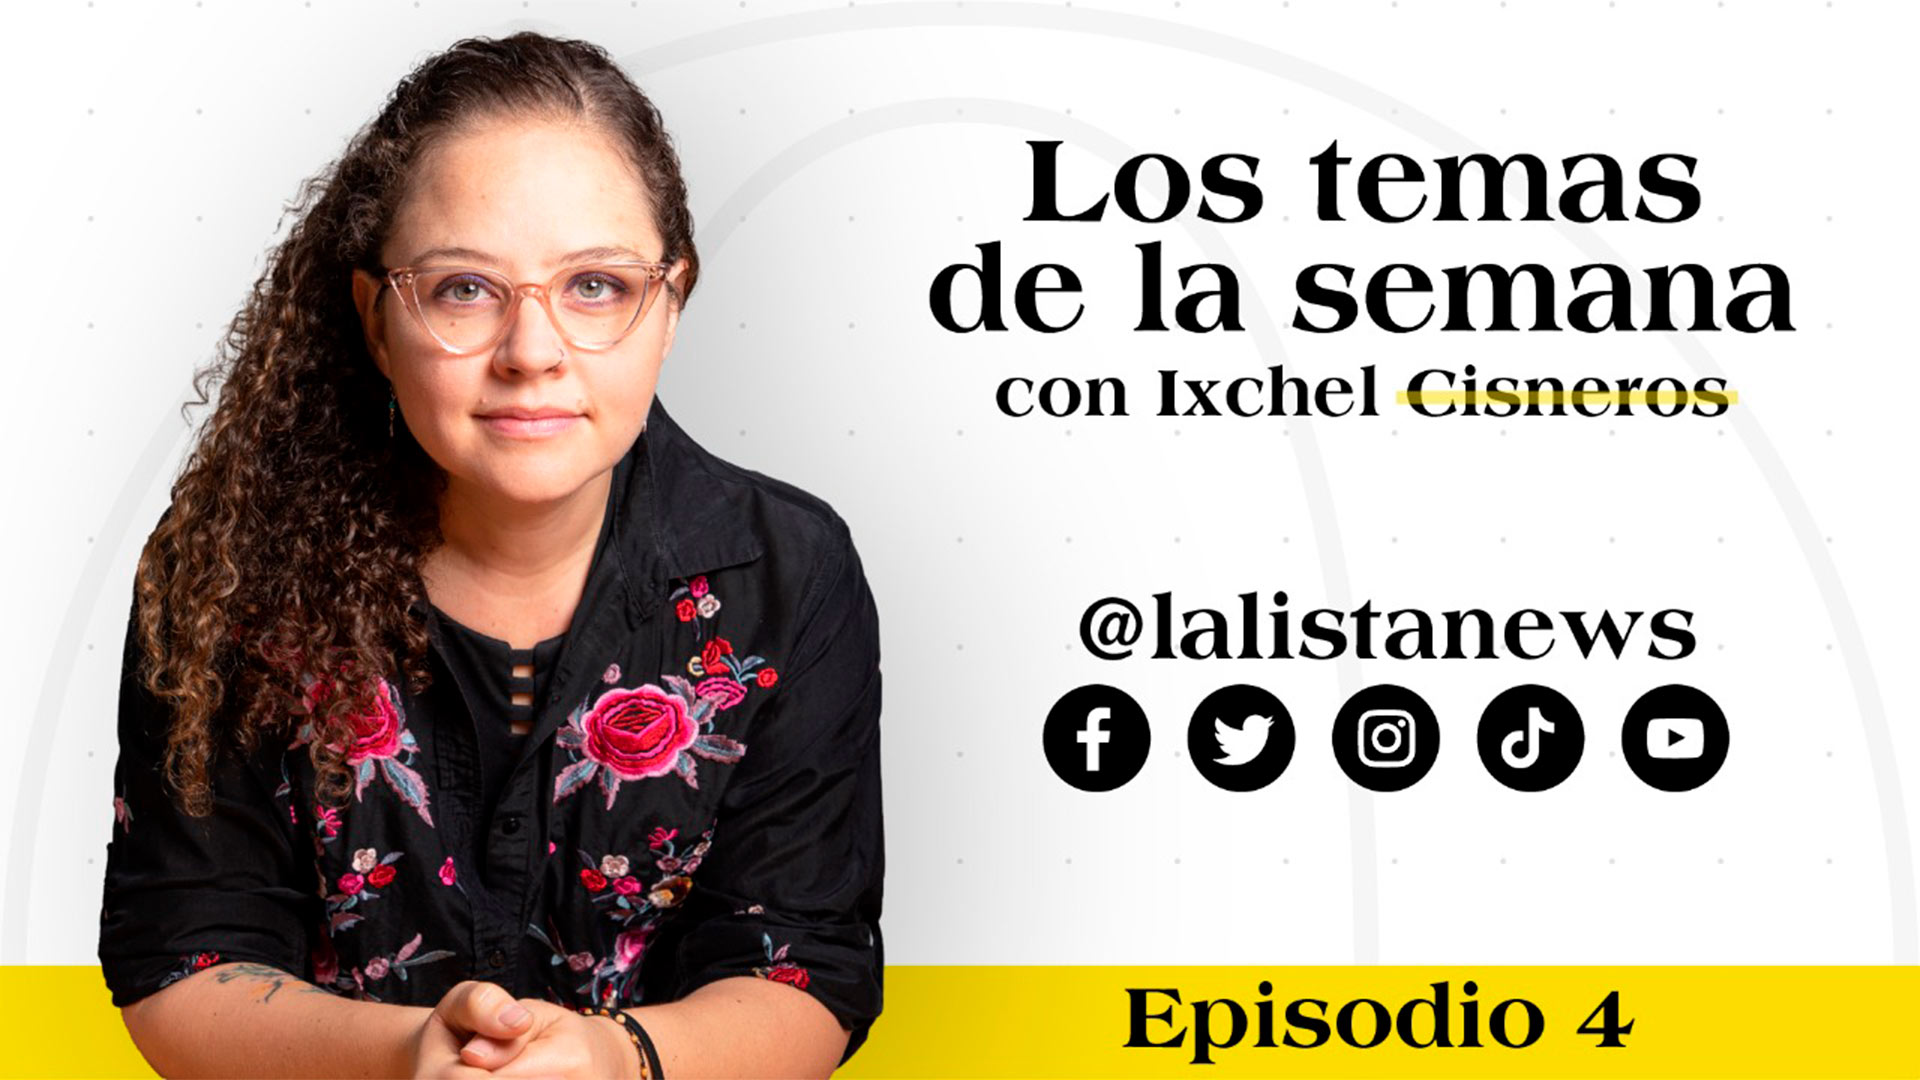 El presunto feminicida de Atizapán, normalistas y Chile: #LosTemasDeLaSemana con Ixchel Cisneros